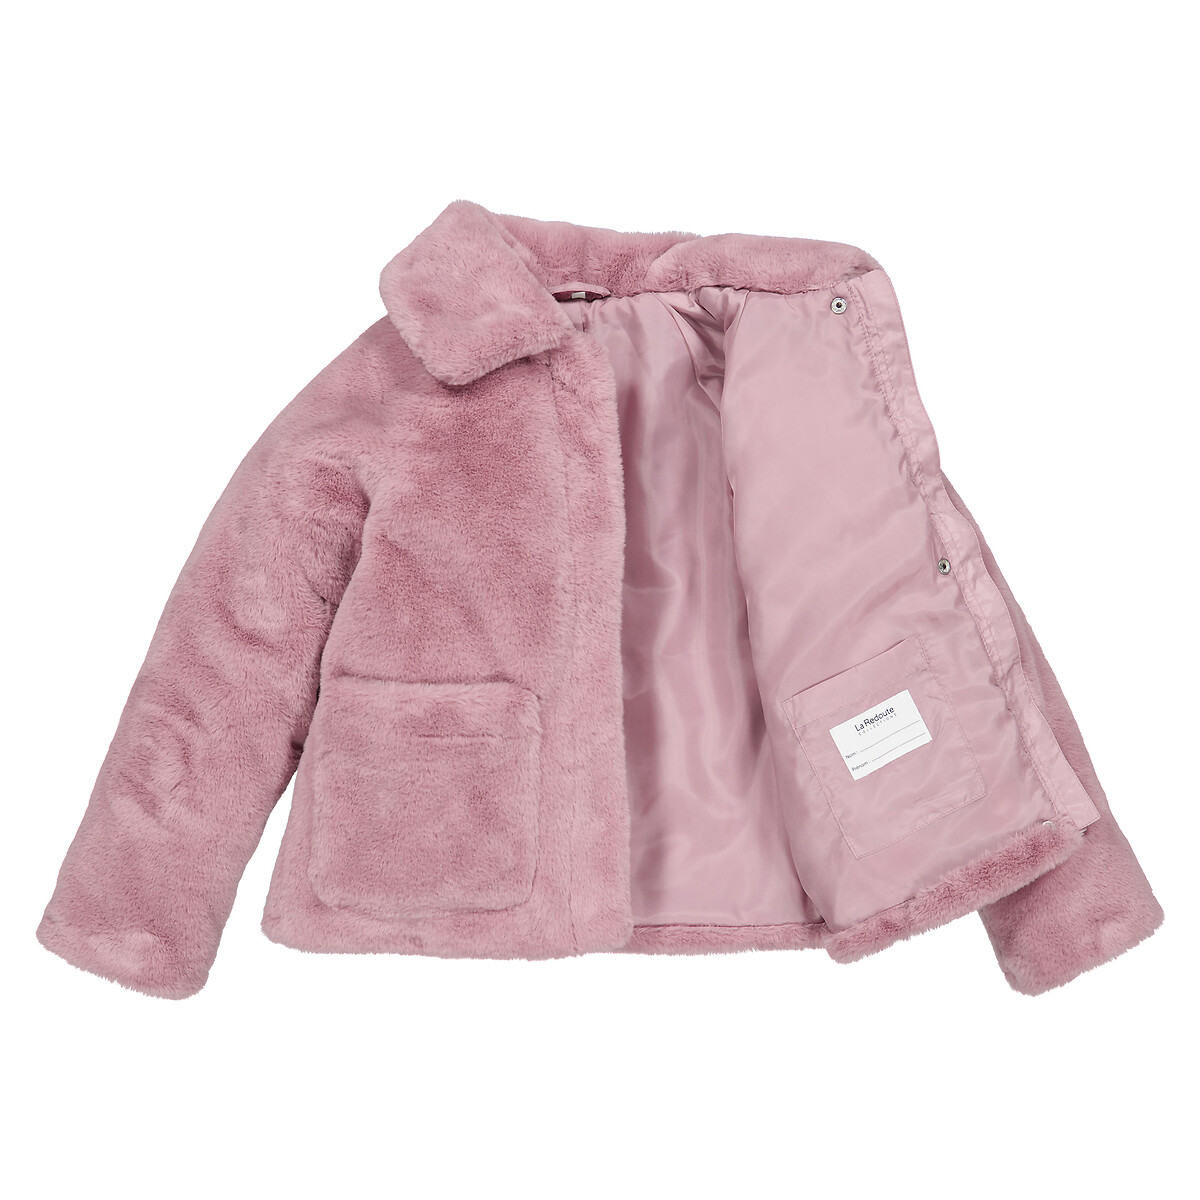 Пальто Утепленное из искусственного меха 3 года - 94 см розовый LaRedoute, размер 3 года - 94 см - фото 5